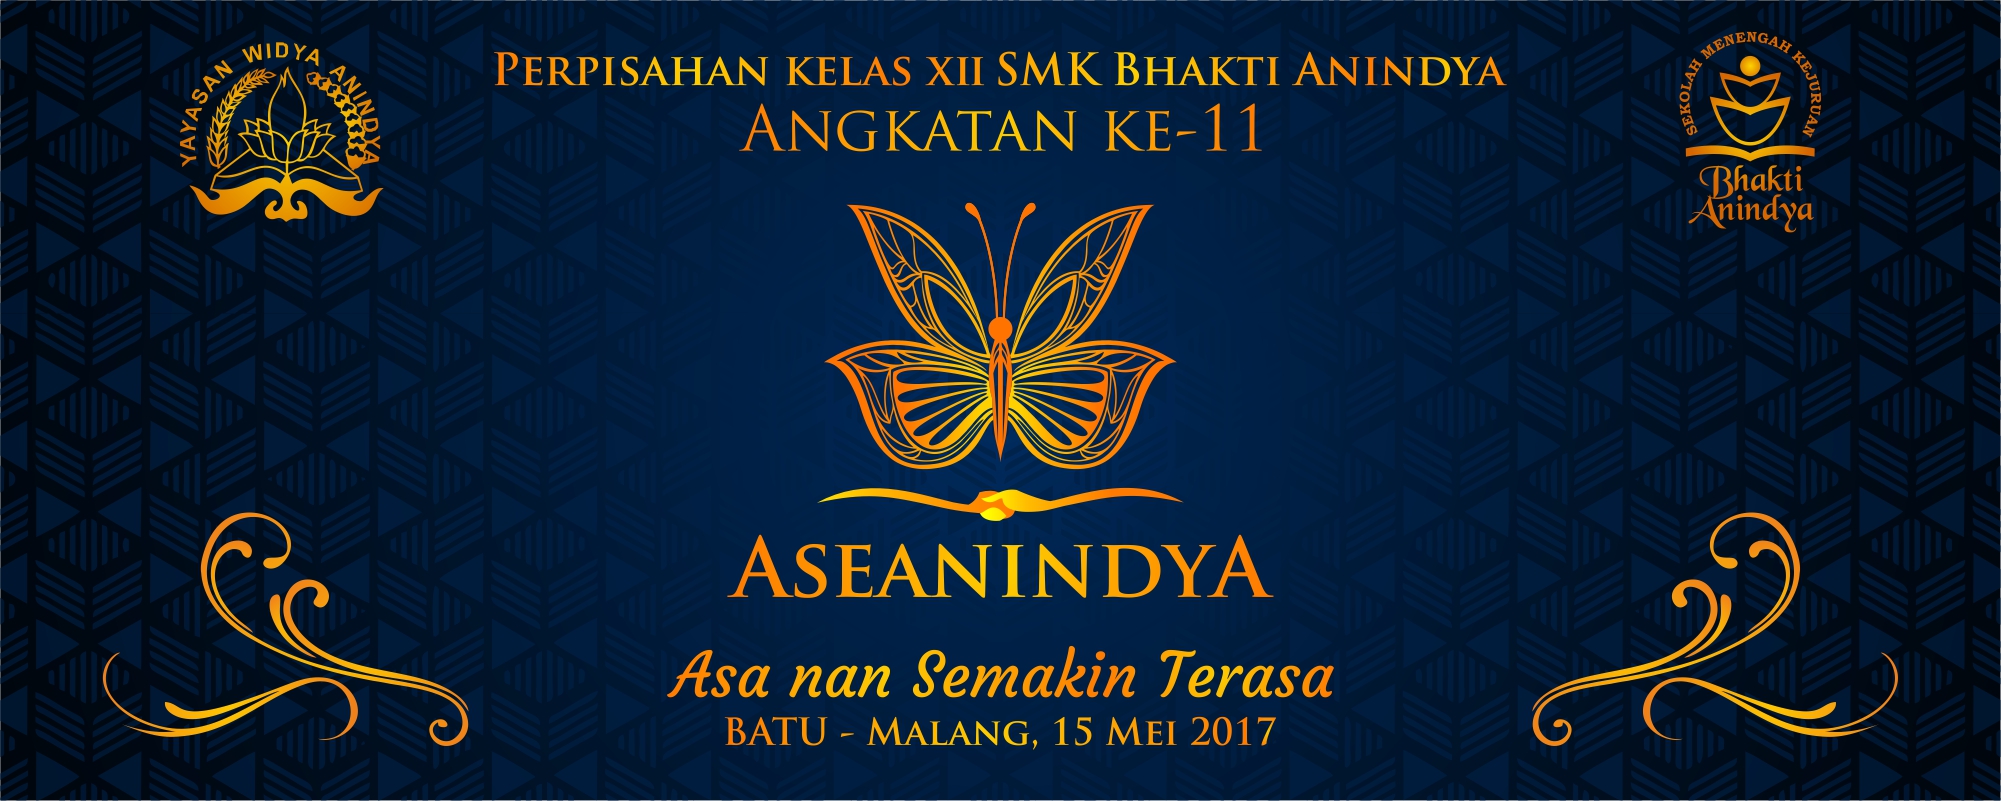 ASEANINDYA: Perpisahan kelas XII angkatan 11 SMK Bhakti Anindya Tangerang